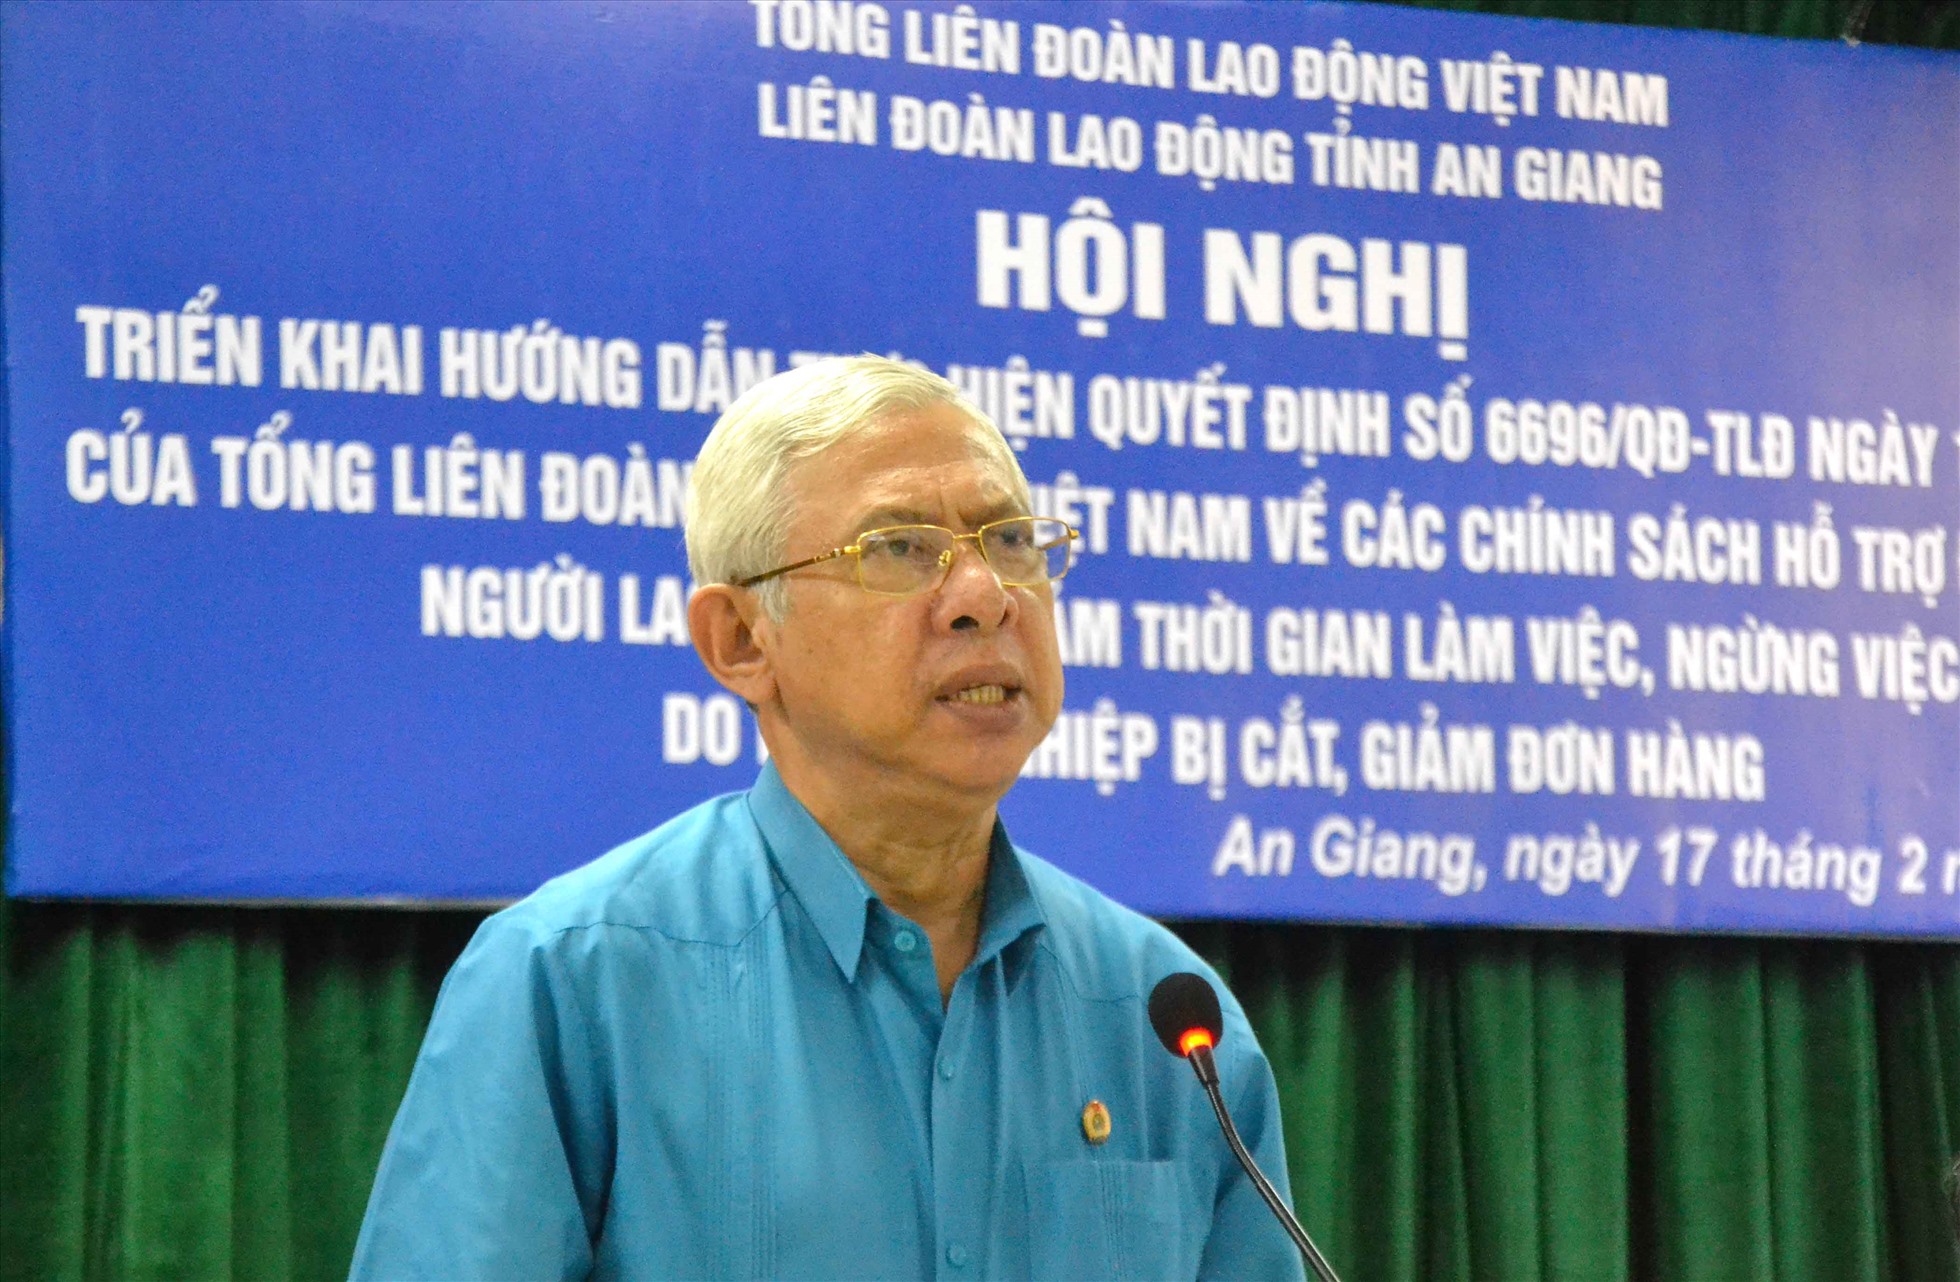 Chủ tịch LĐLĐ tỉnh An Giang Nguyễn Thiện Phú phát biểu tại hội nghị. Ảnh: Lục Tùng